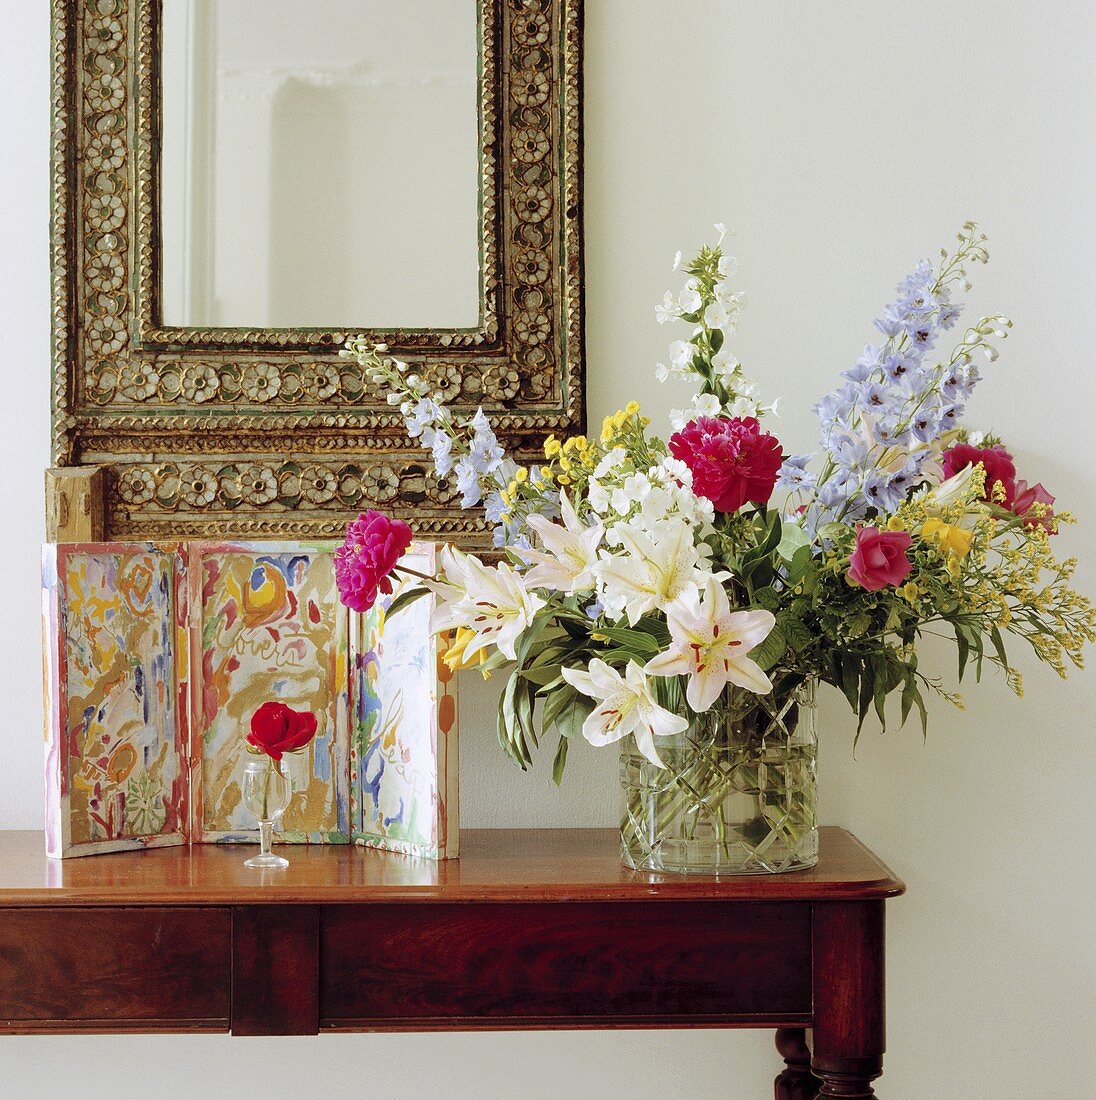 Wandtisch mit Sommerstrauss und Bild, darüber Spiegel mit verziertem Rahmen